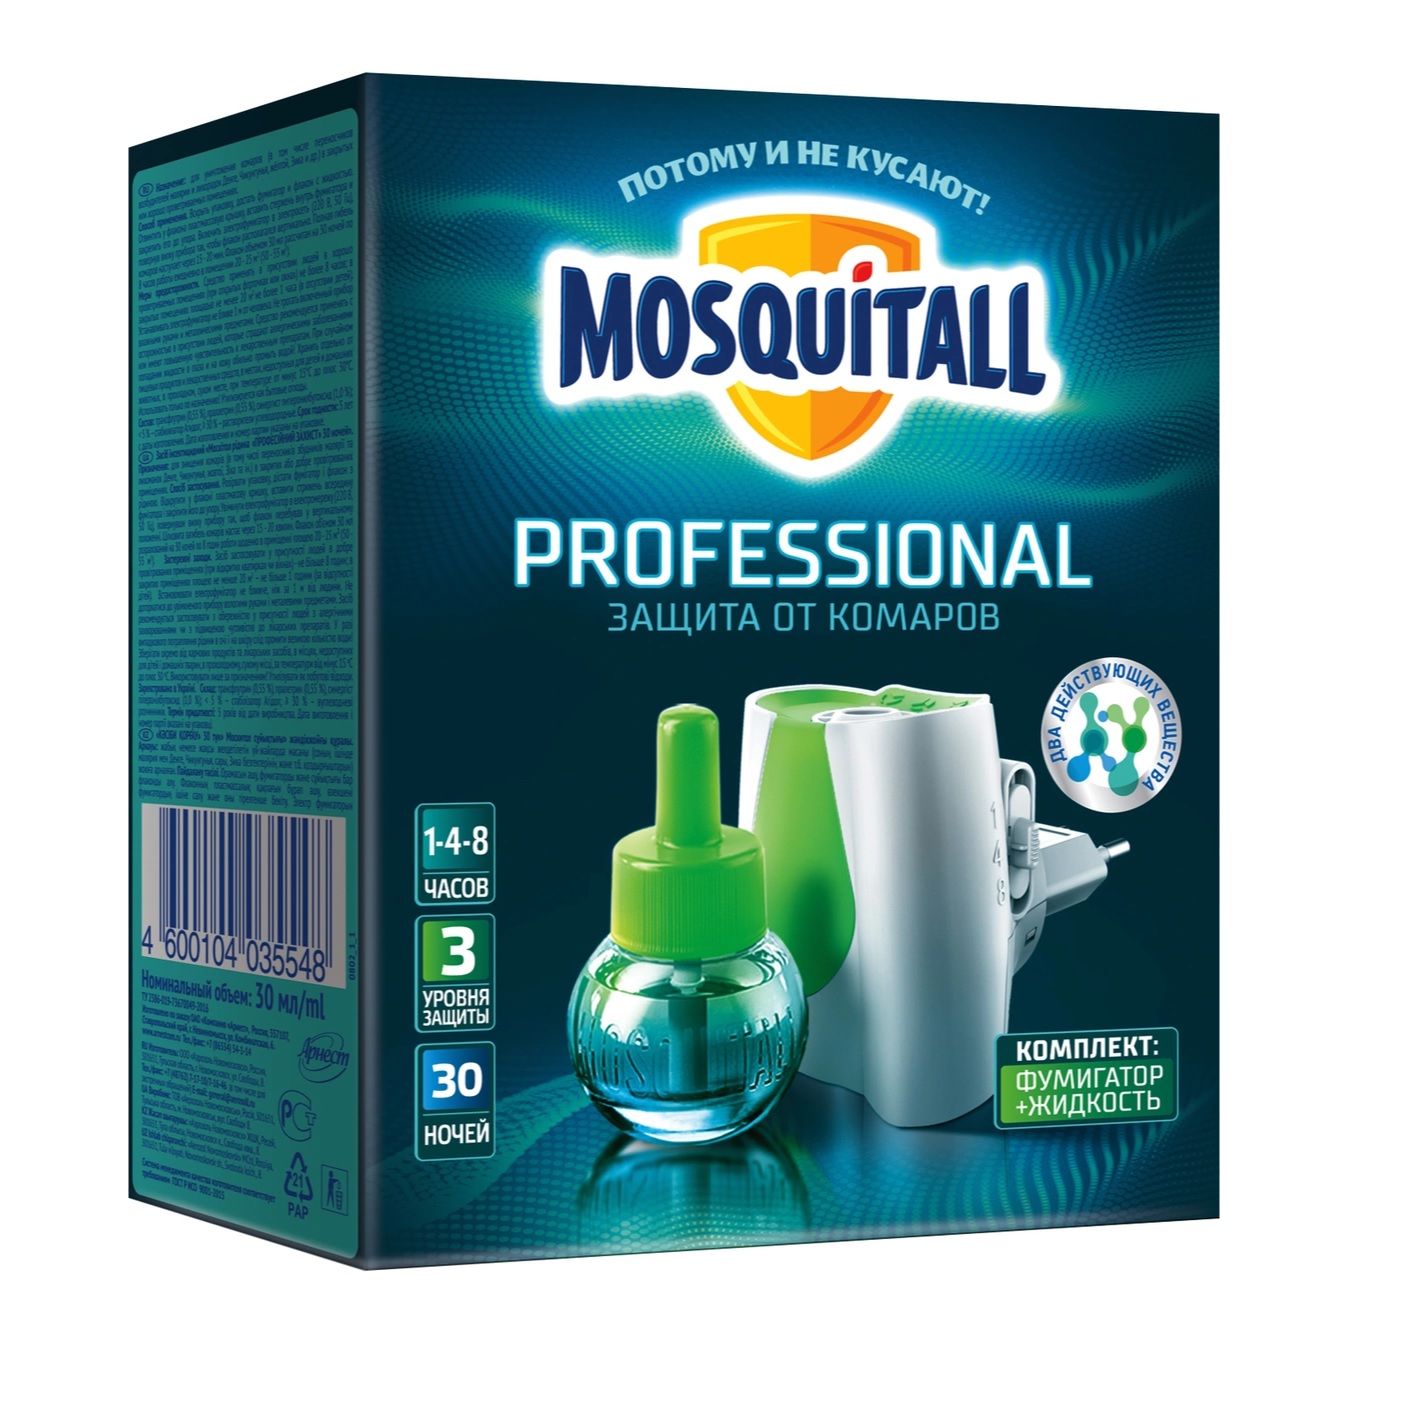 Жидкость 30 ночей Mosquitall Профессиональная защита от комаров 30 мл дополнительный флакон жидкость от комаров mosquitall 30 ночей 30 мл